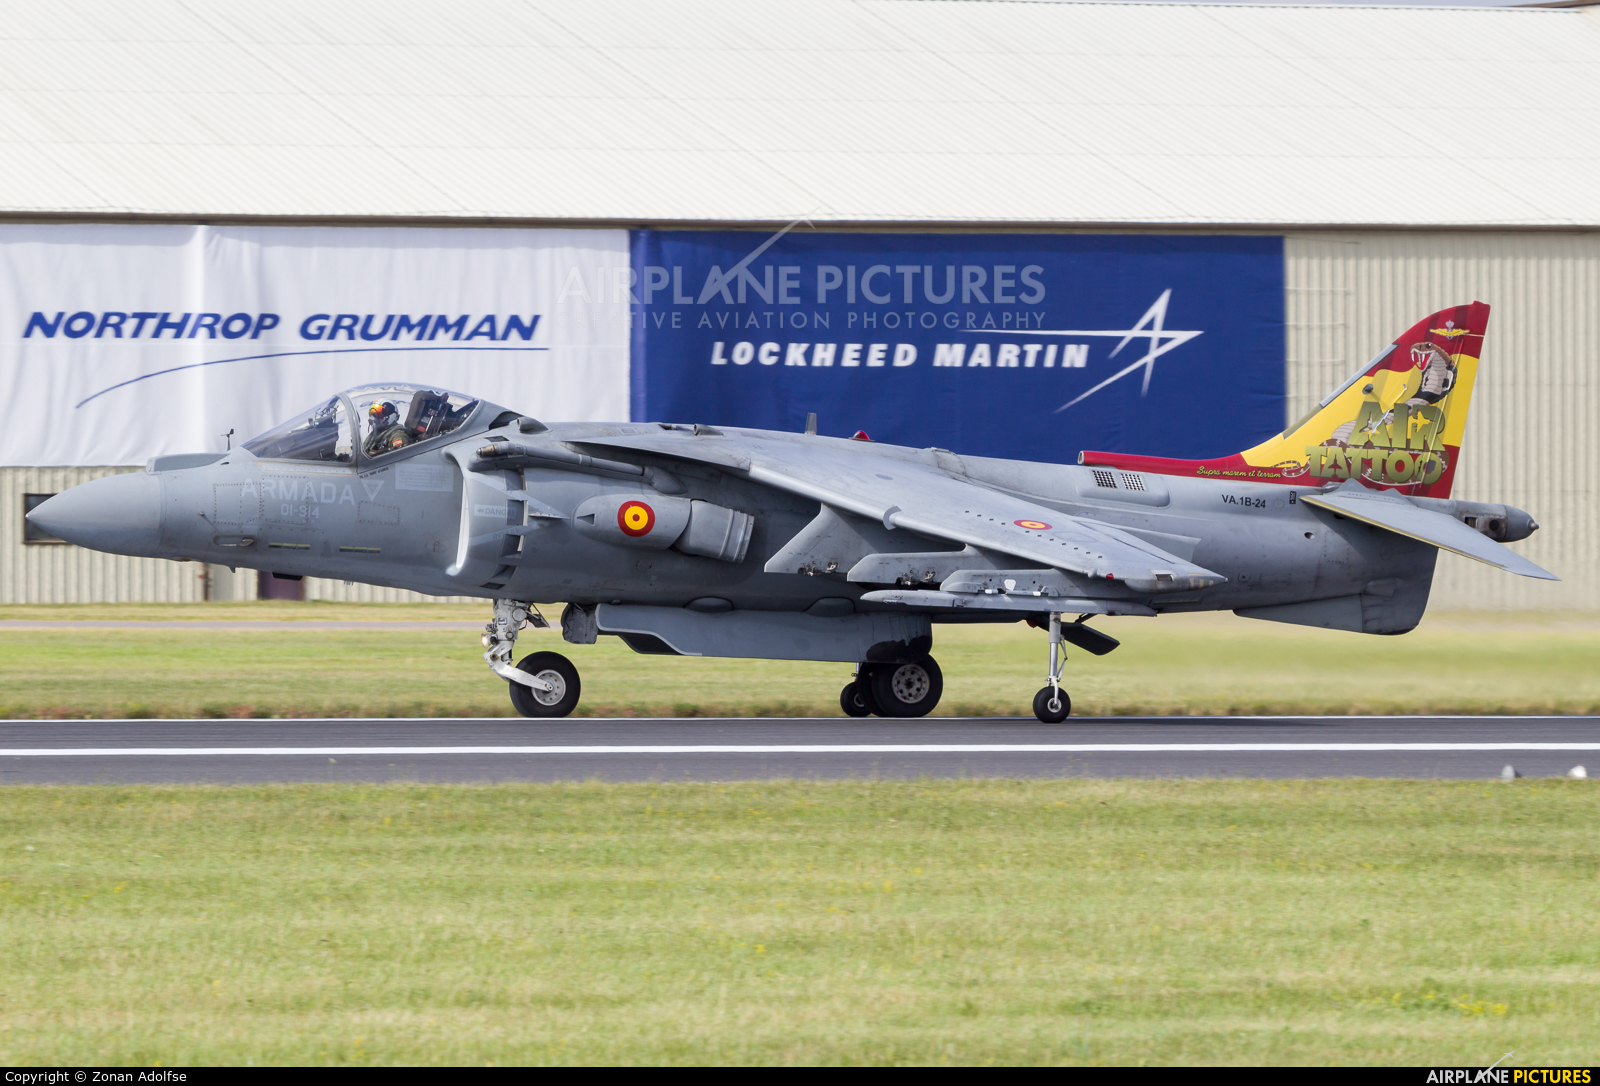 Spain - Navy VA.1B-24 aircraft at Fairford